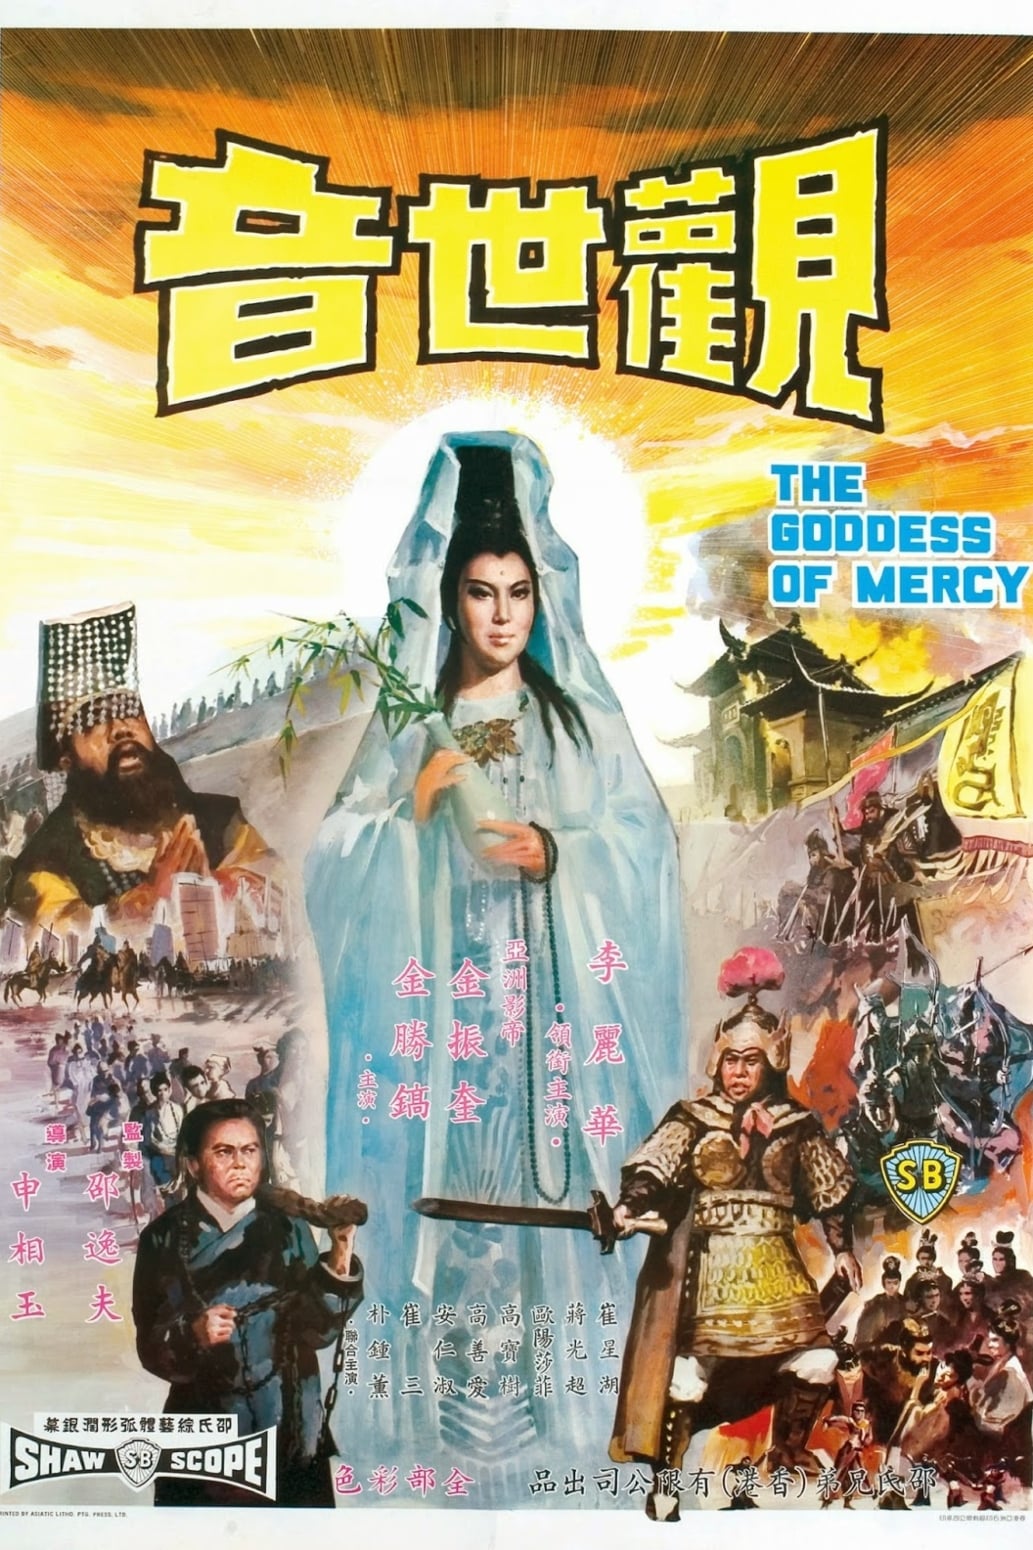 The Buddhist Goddess of Mercy (1967)